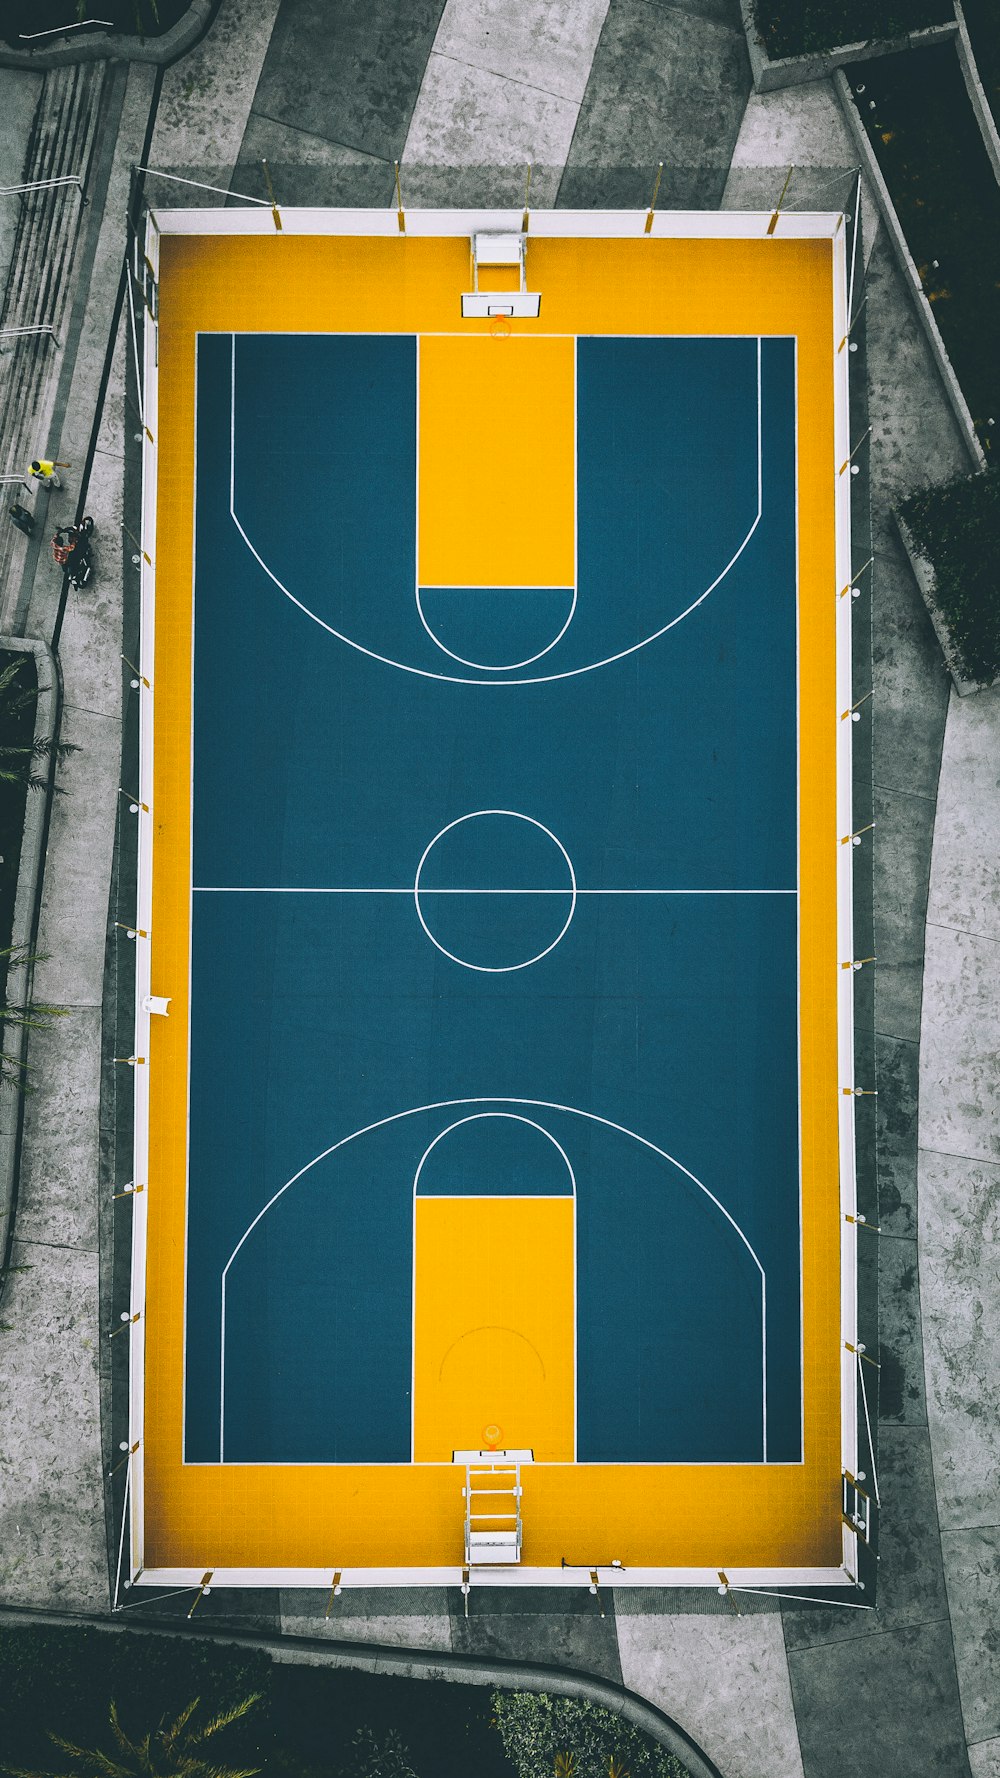 Photographie de vue aérienne d’un terrain de basket-ball jaune et bleu